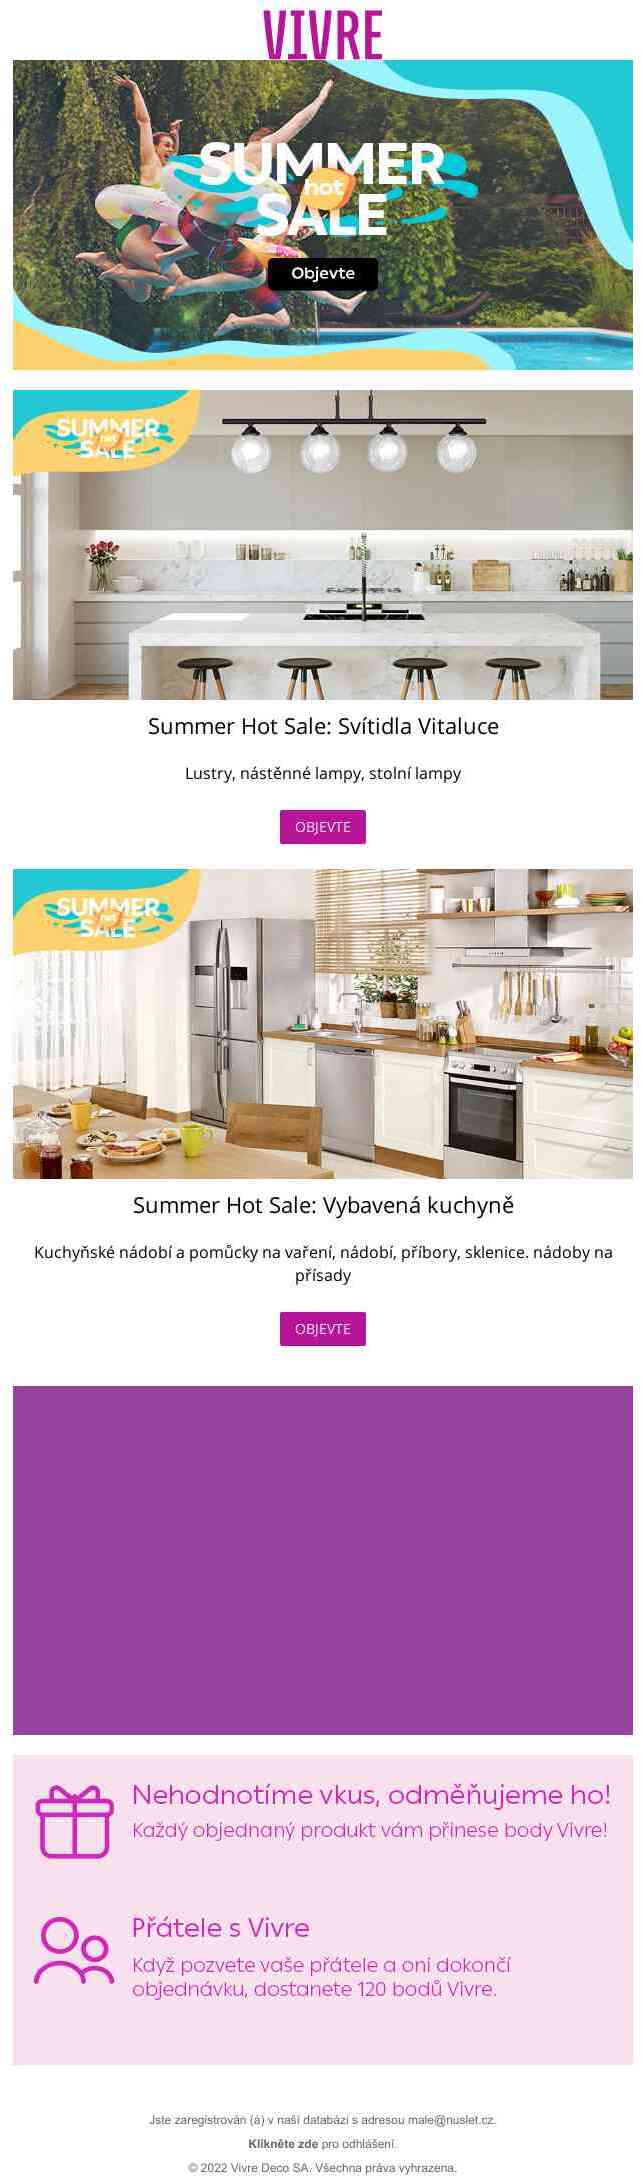 Speciální akce se Summer Hot Sale! Objevte kolekce Svítidla Vitaluce a Vybavená kuchyně. 🤩